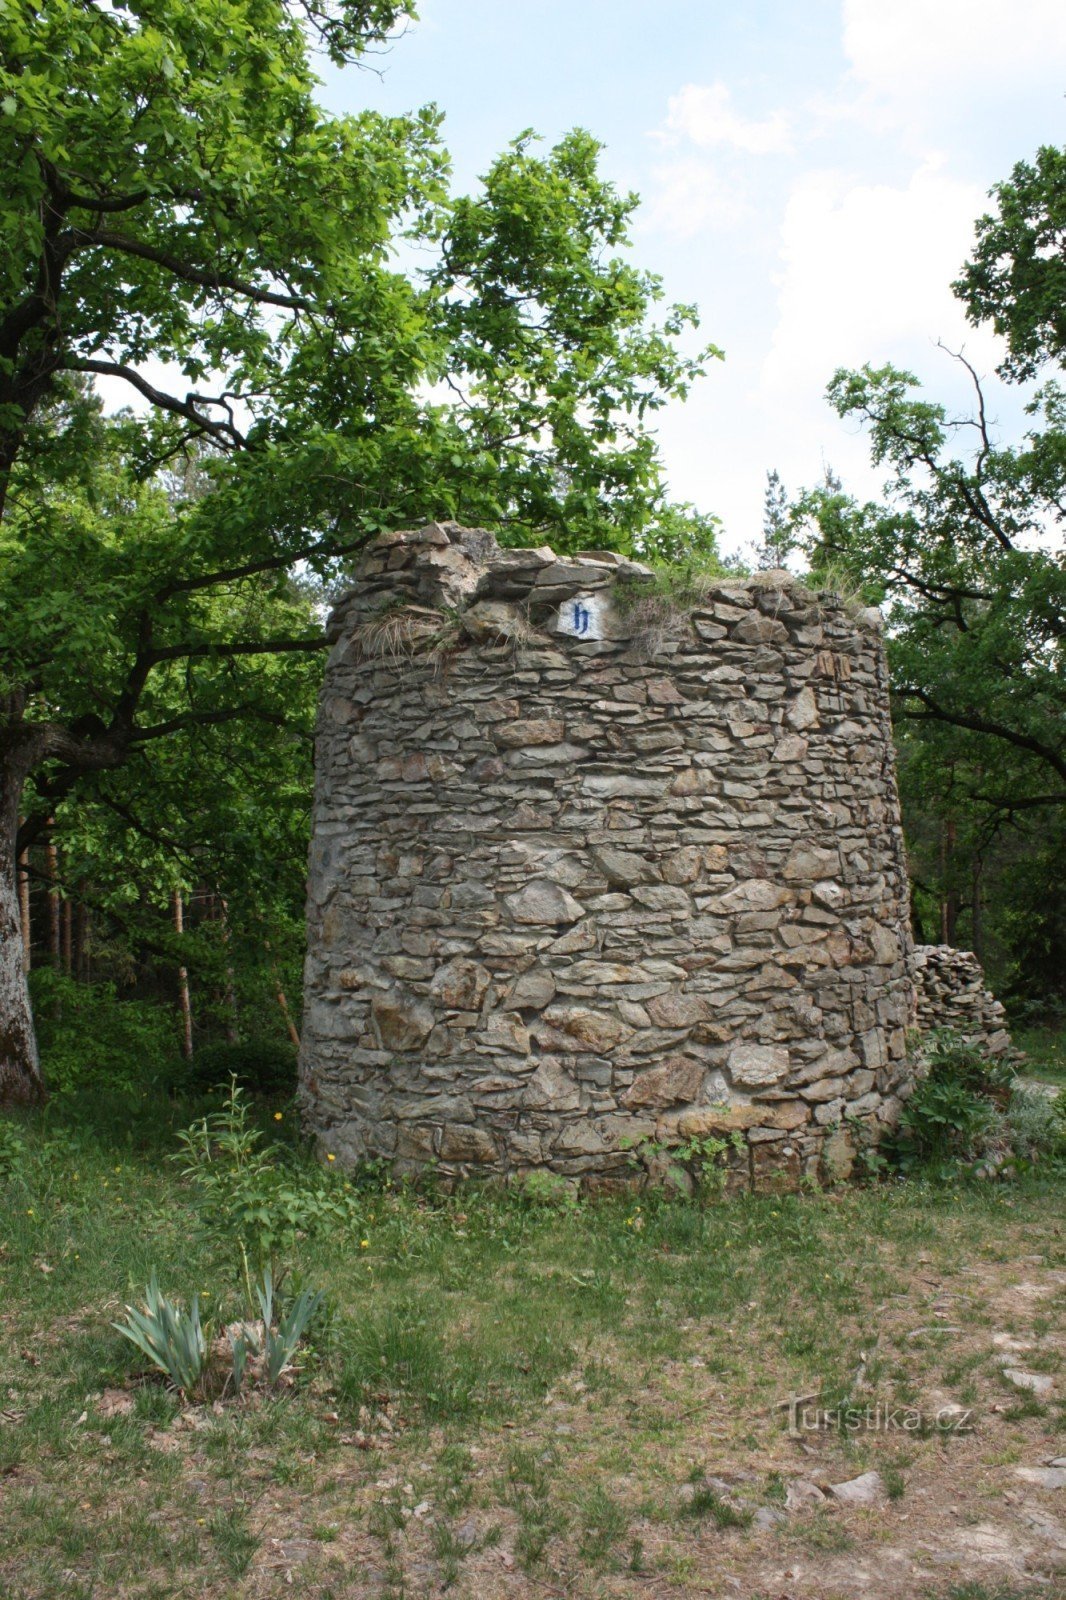 Na Chlumun näkötornin kivijäännökset lähellä Slatiňanyta